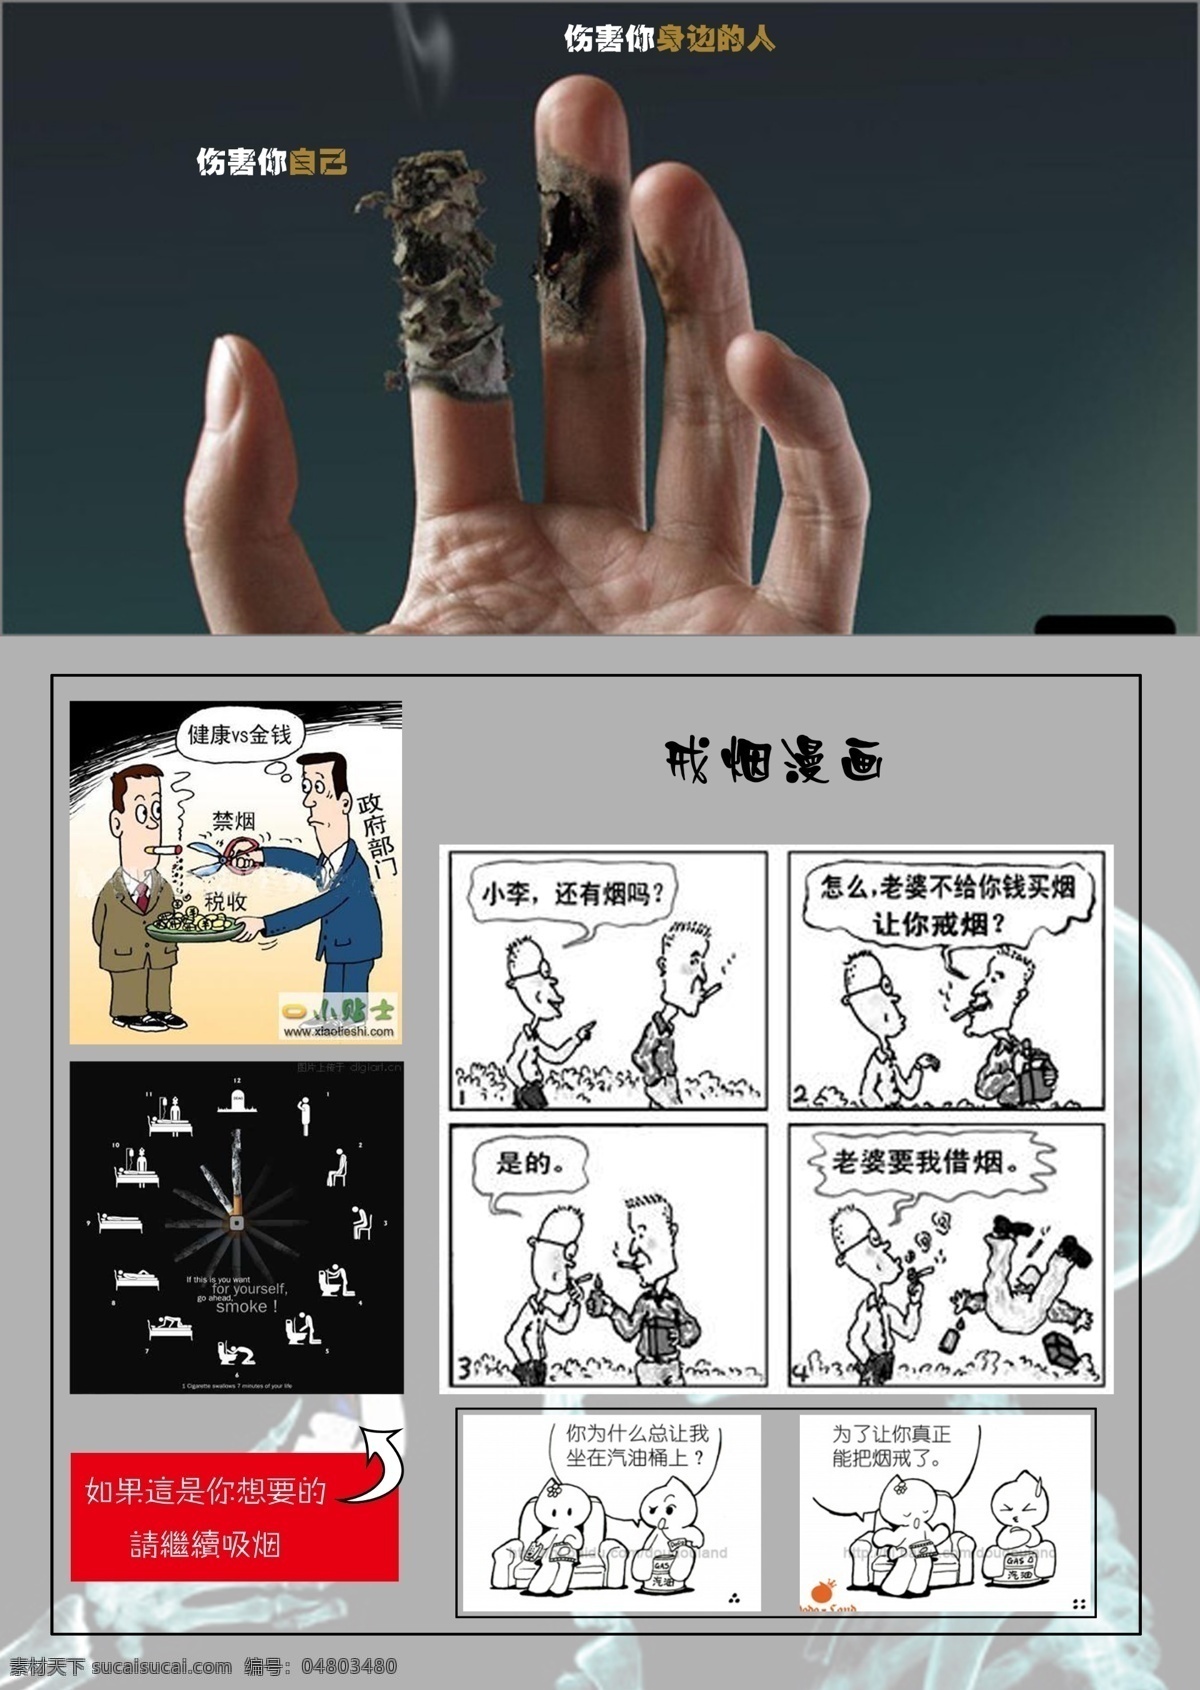 戒烟广告 戒烟 禁烟 烟 漫画 广告 创意 分层 源文件